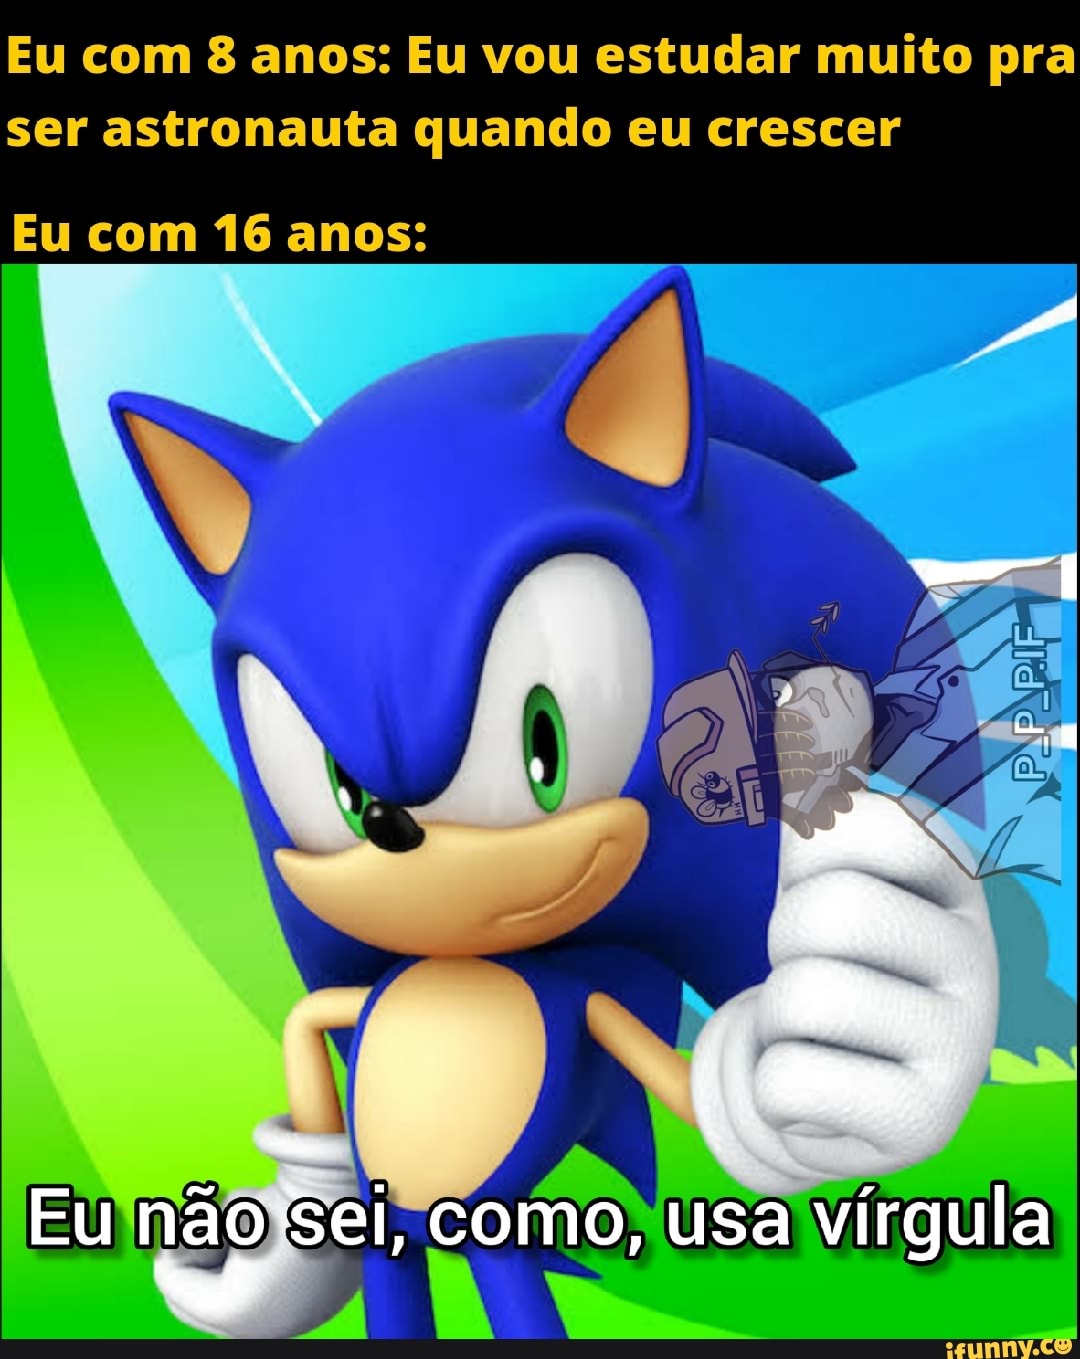 Por alguma razão o Sonic virou o rosto dos memes mais aleatórios do Brasil  - Quicando - UOL